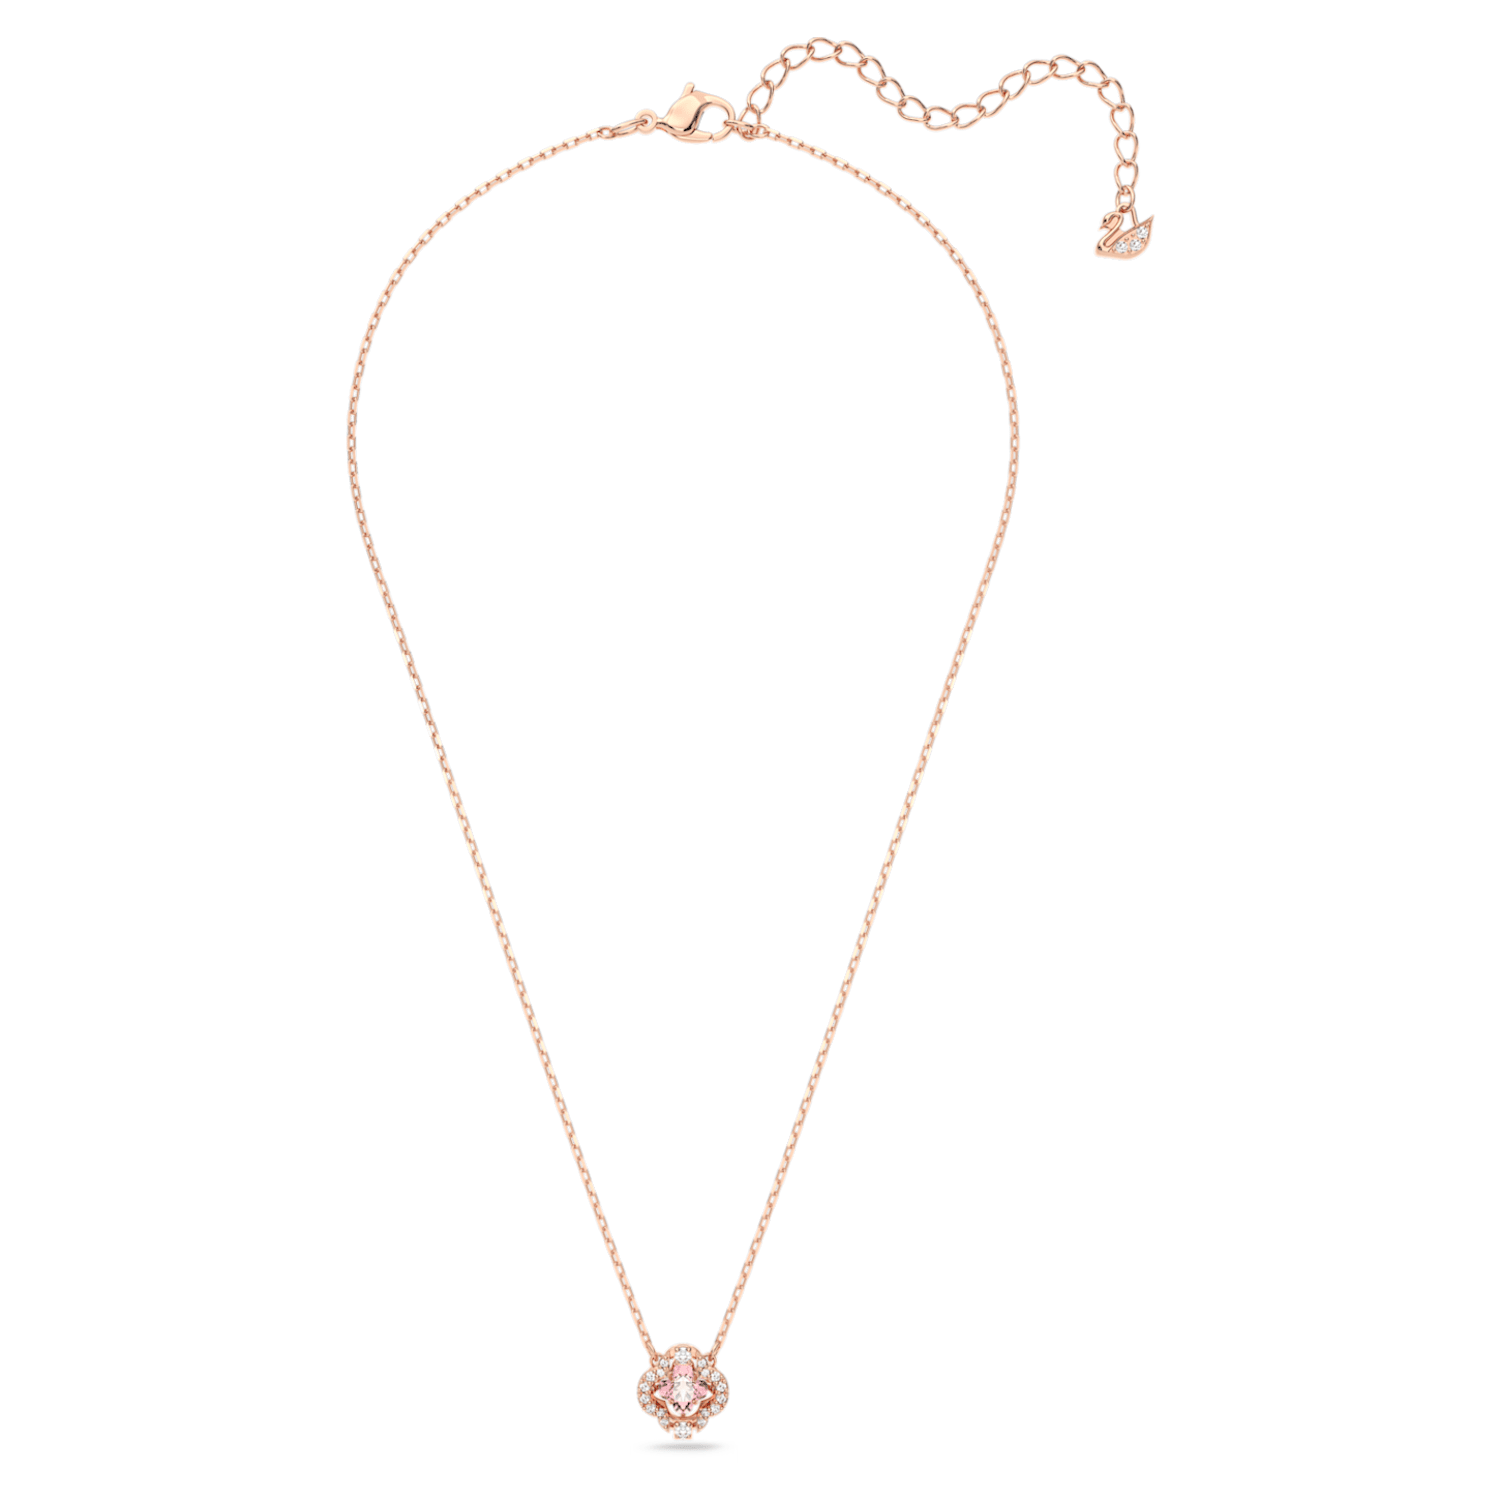 Swarovski Sparkling Dance necklace, Clover, Pink, Rose gold-tone 